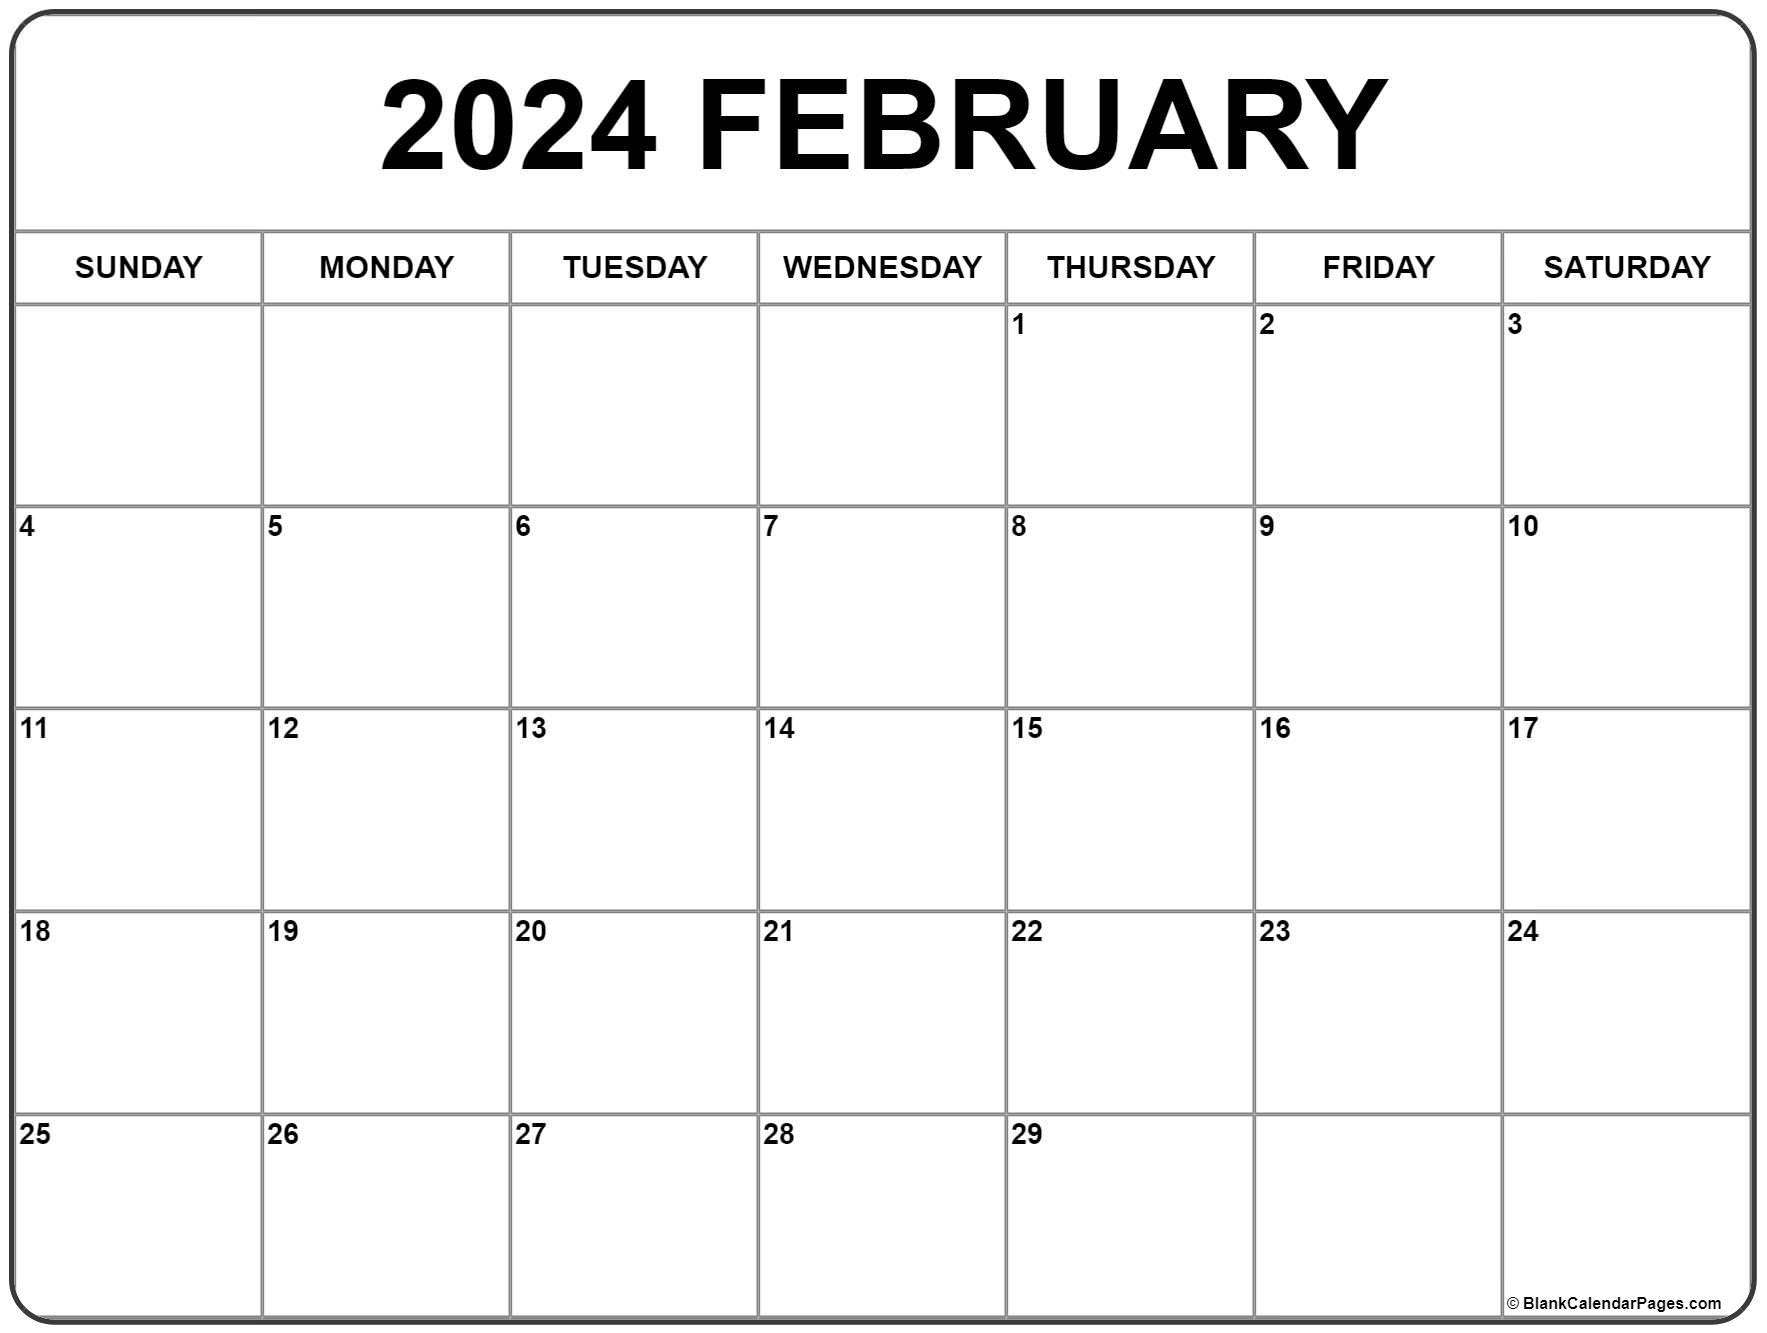 February 2024 calendar. free printable calendar